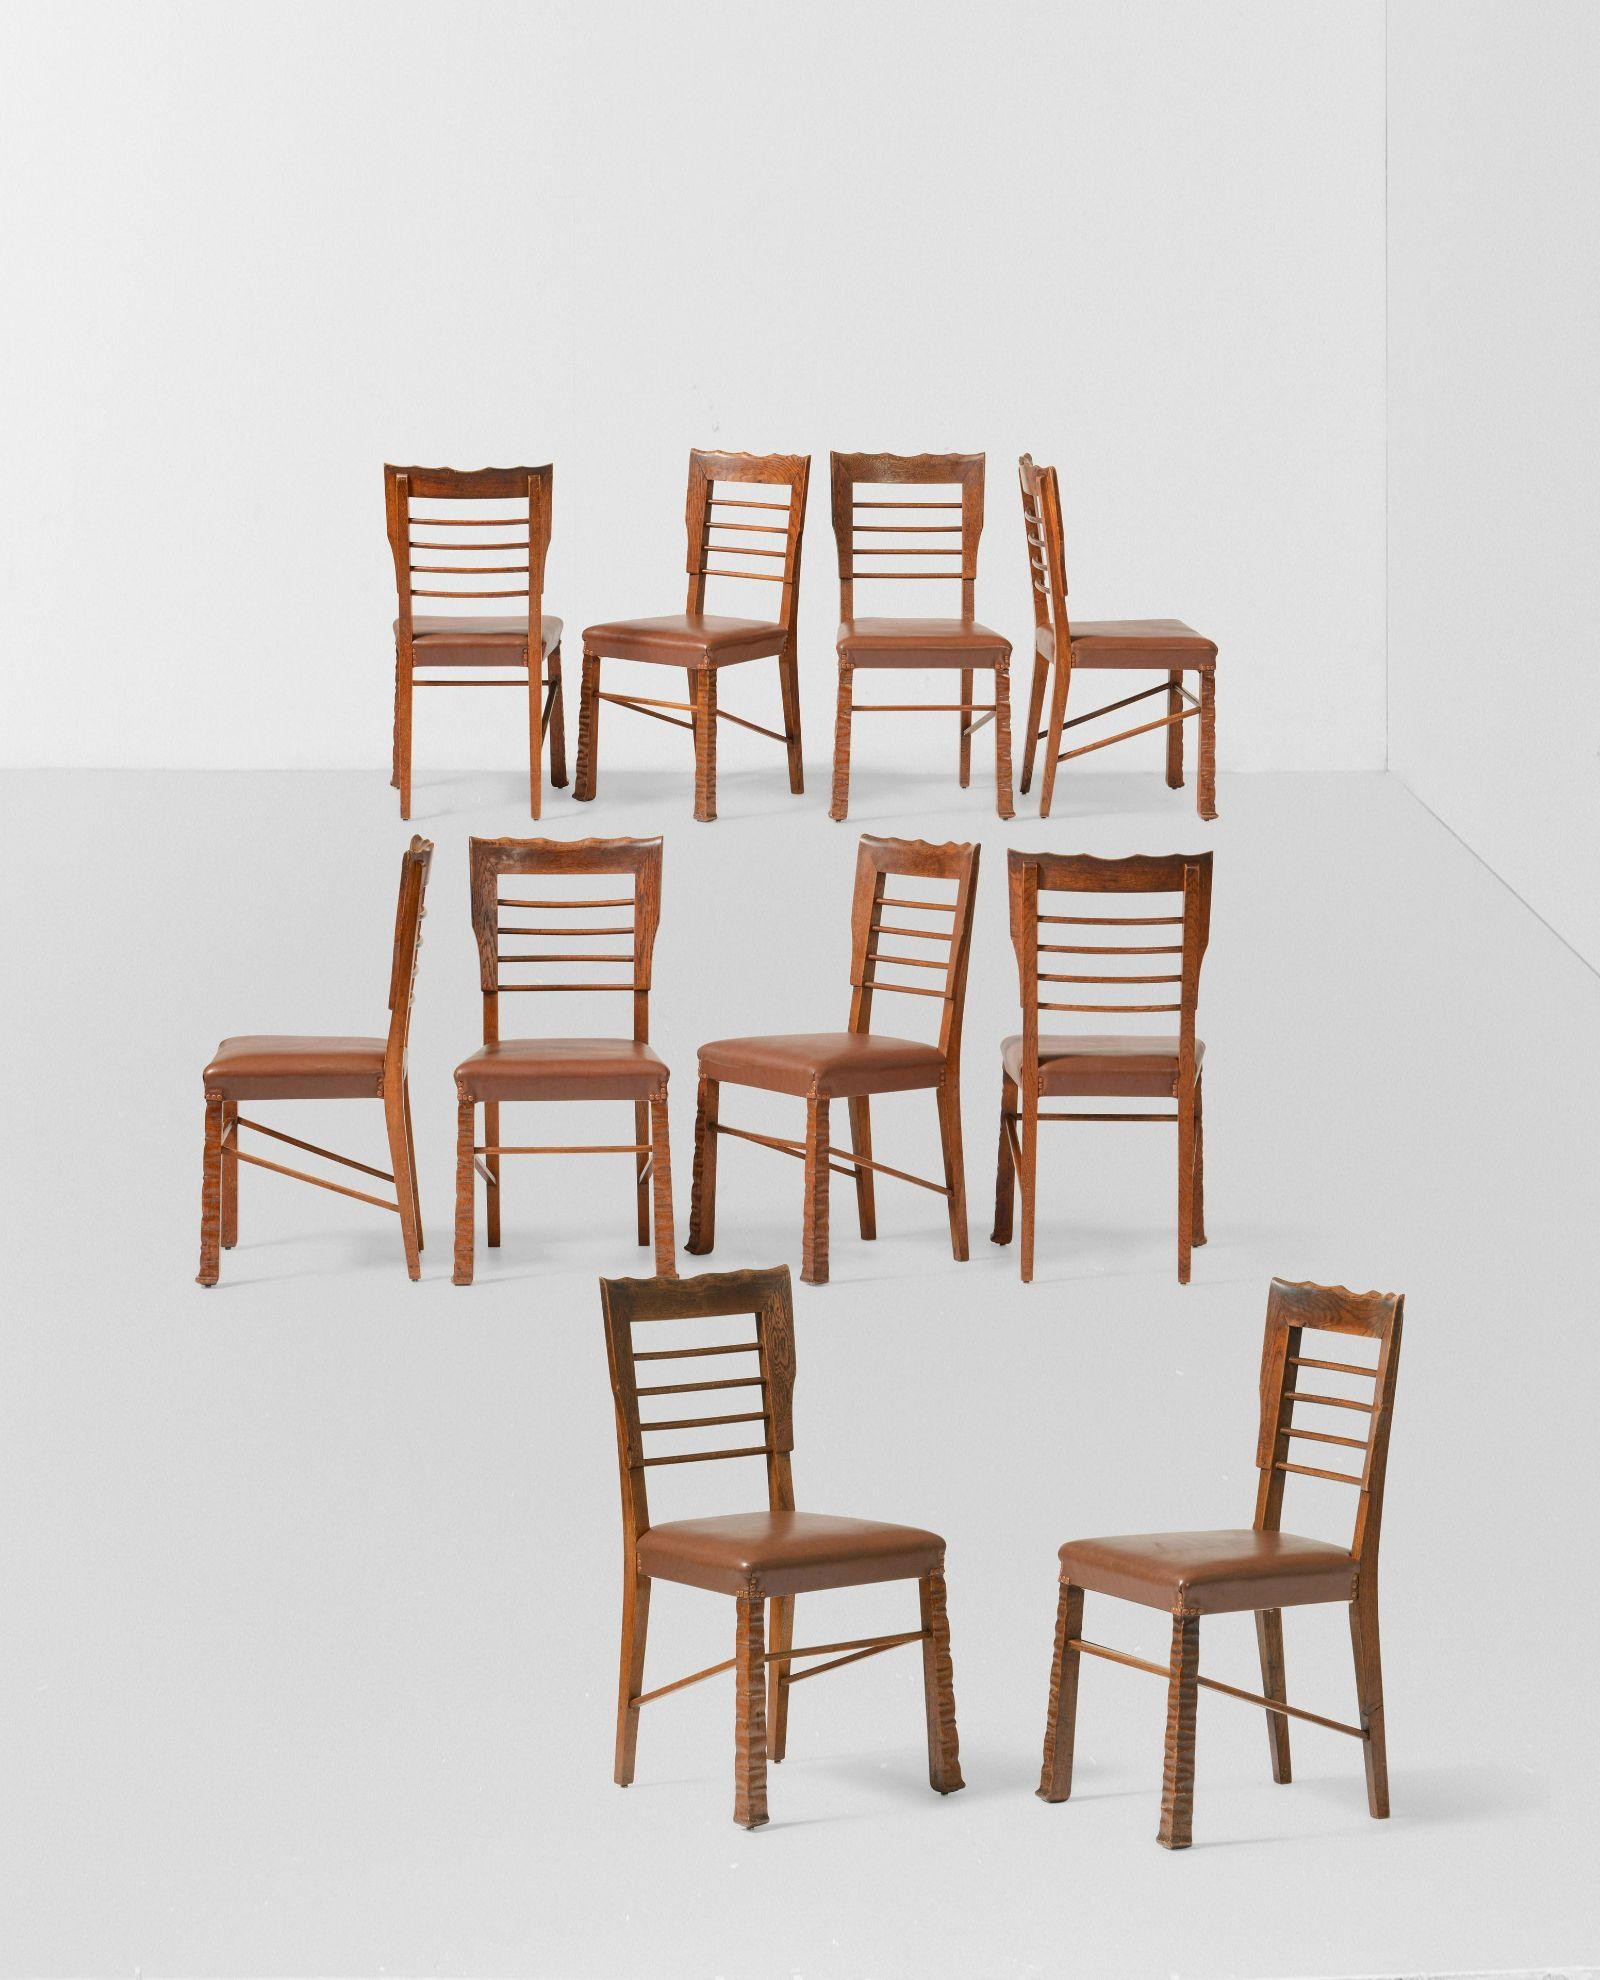 Vittorio Valabrega Chaises à manger rustiques et primitives, lot de 10

Il s'agit d'un ensemble extrêmement rare de chaises rustiques de style déco. Leur aspect est à la fois lourd et léger grâce au dos en échelle. Sculpté en chêne, le dossier en